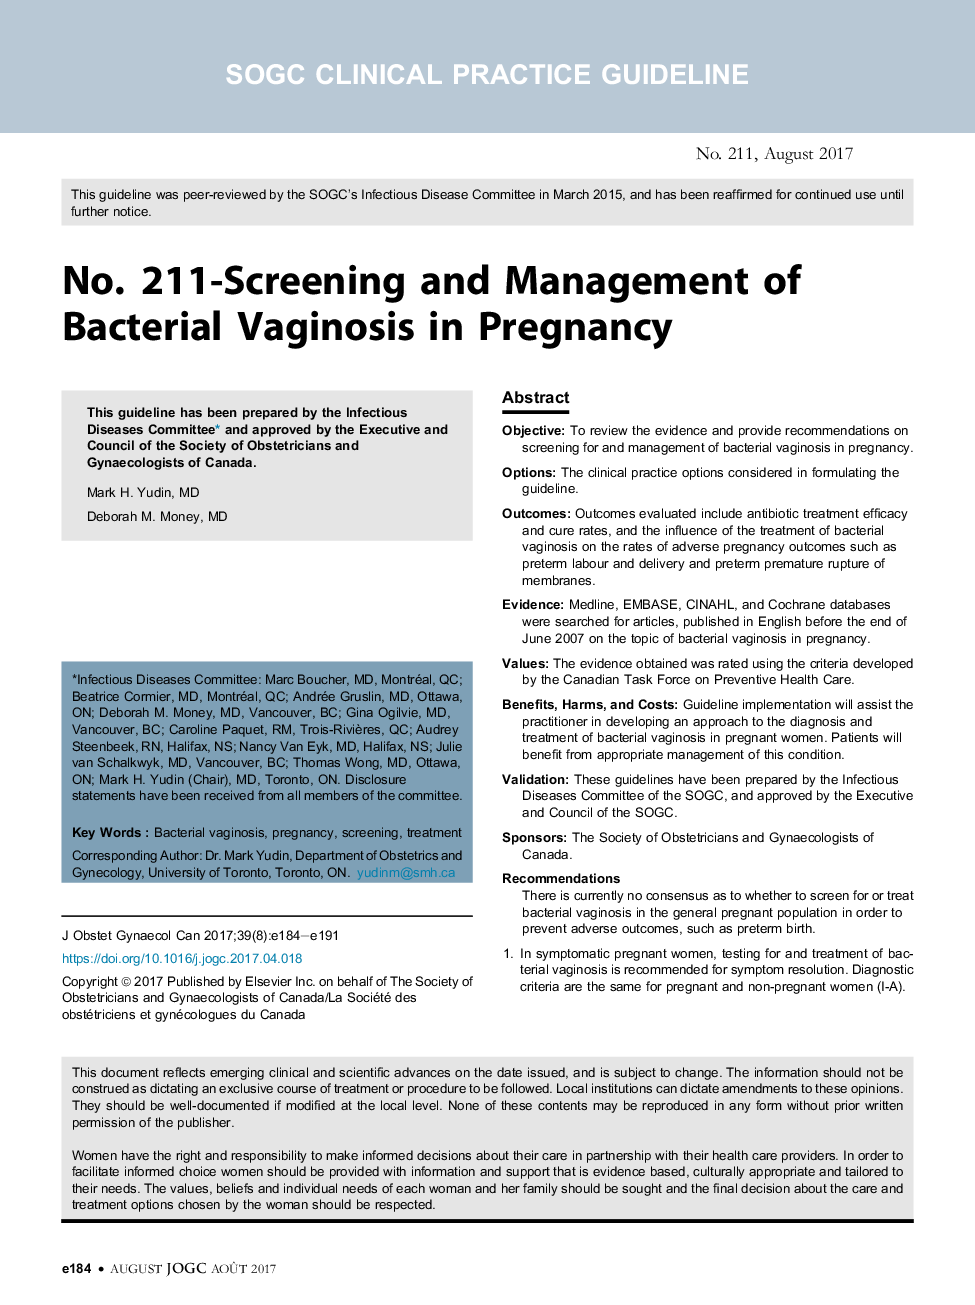 شماره 211 - غربالگری و مدیریت واژینوز باکتریایی در حاملگی 